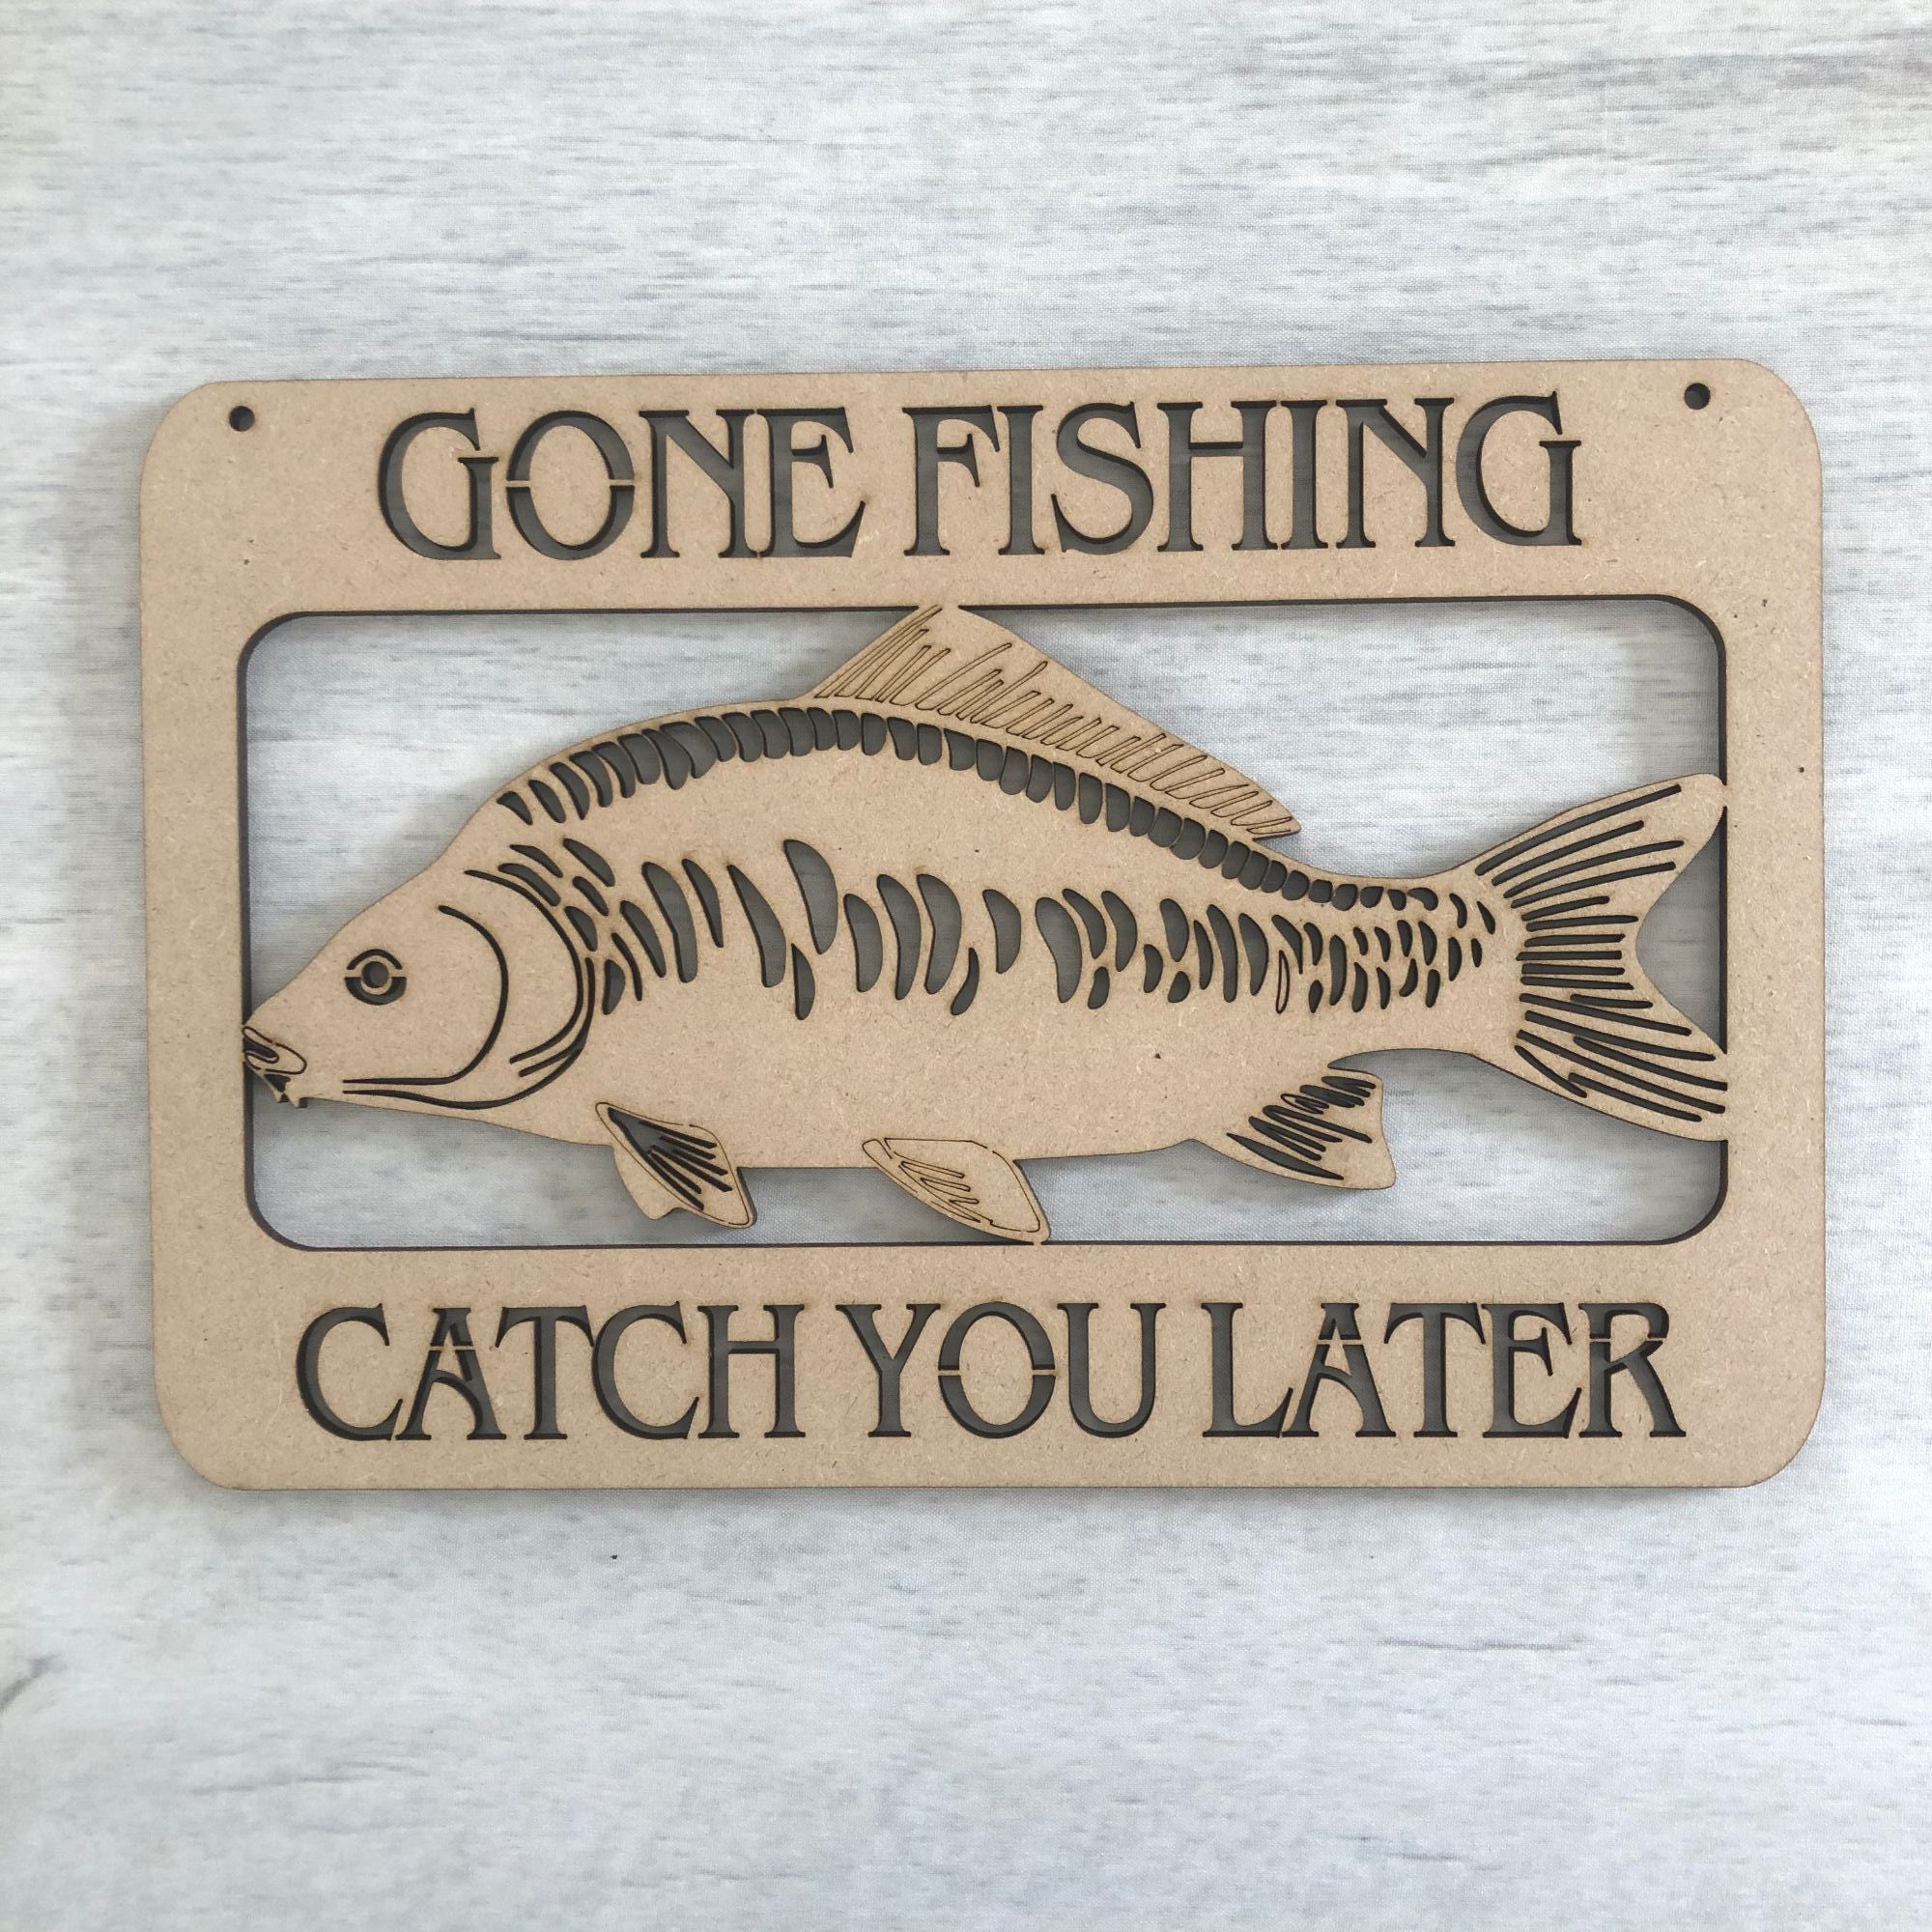 Gone Fishing door plaque